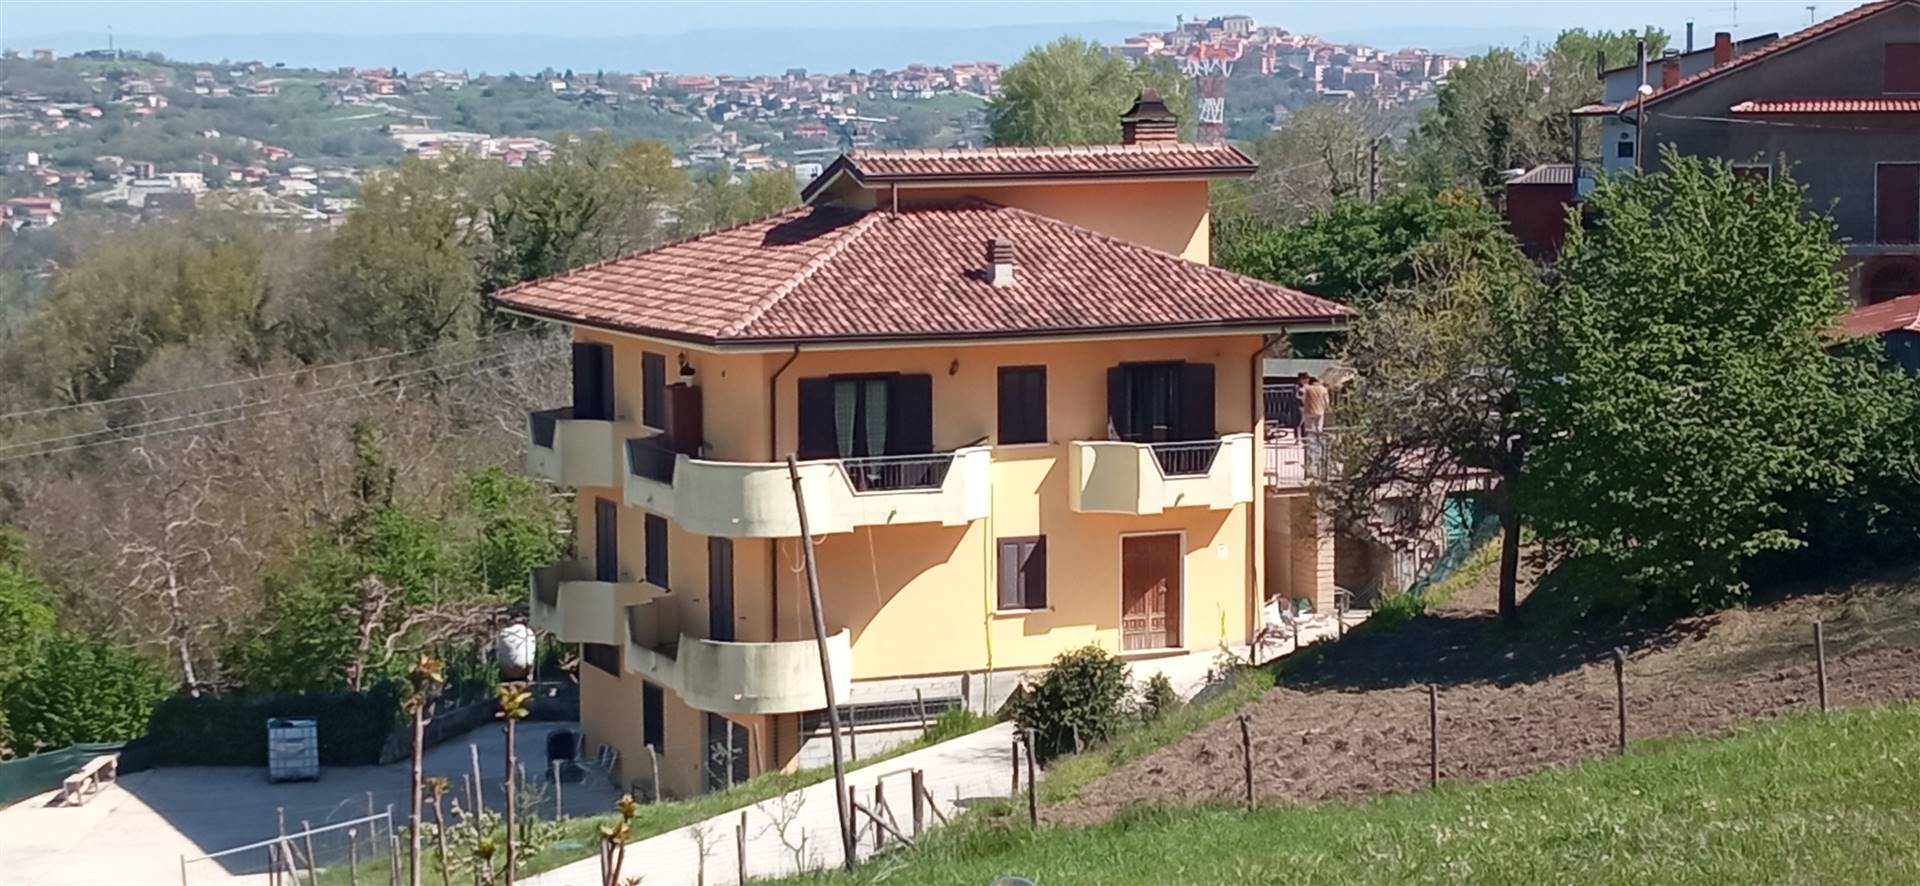 Villa in vendita a Montefalcione, 8 locali, zona Zona: Castelrotto, prezzo € 219.000 | CambioCasa.it